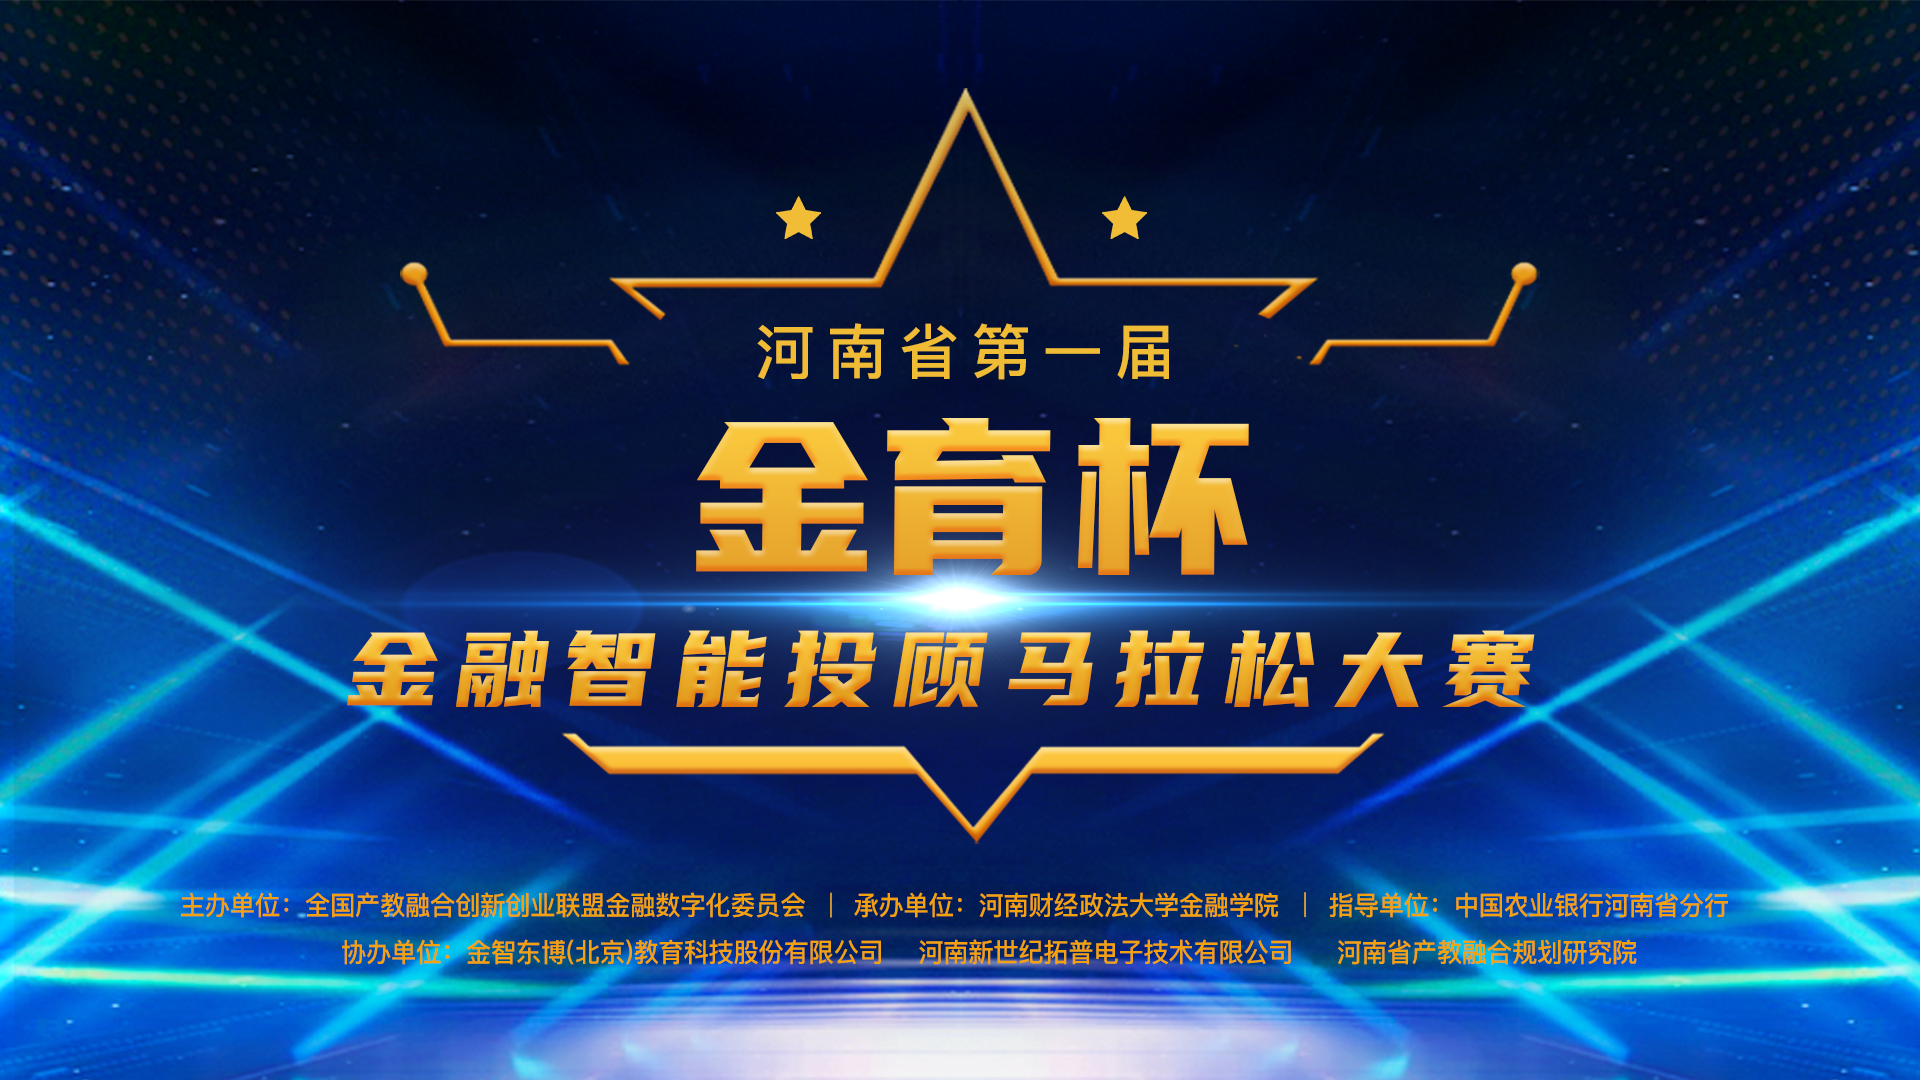 河南省第一届“金育杯”金融智能投顾马拉松大赛决赛公告